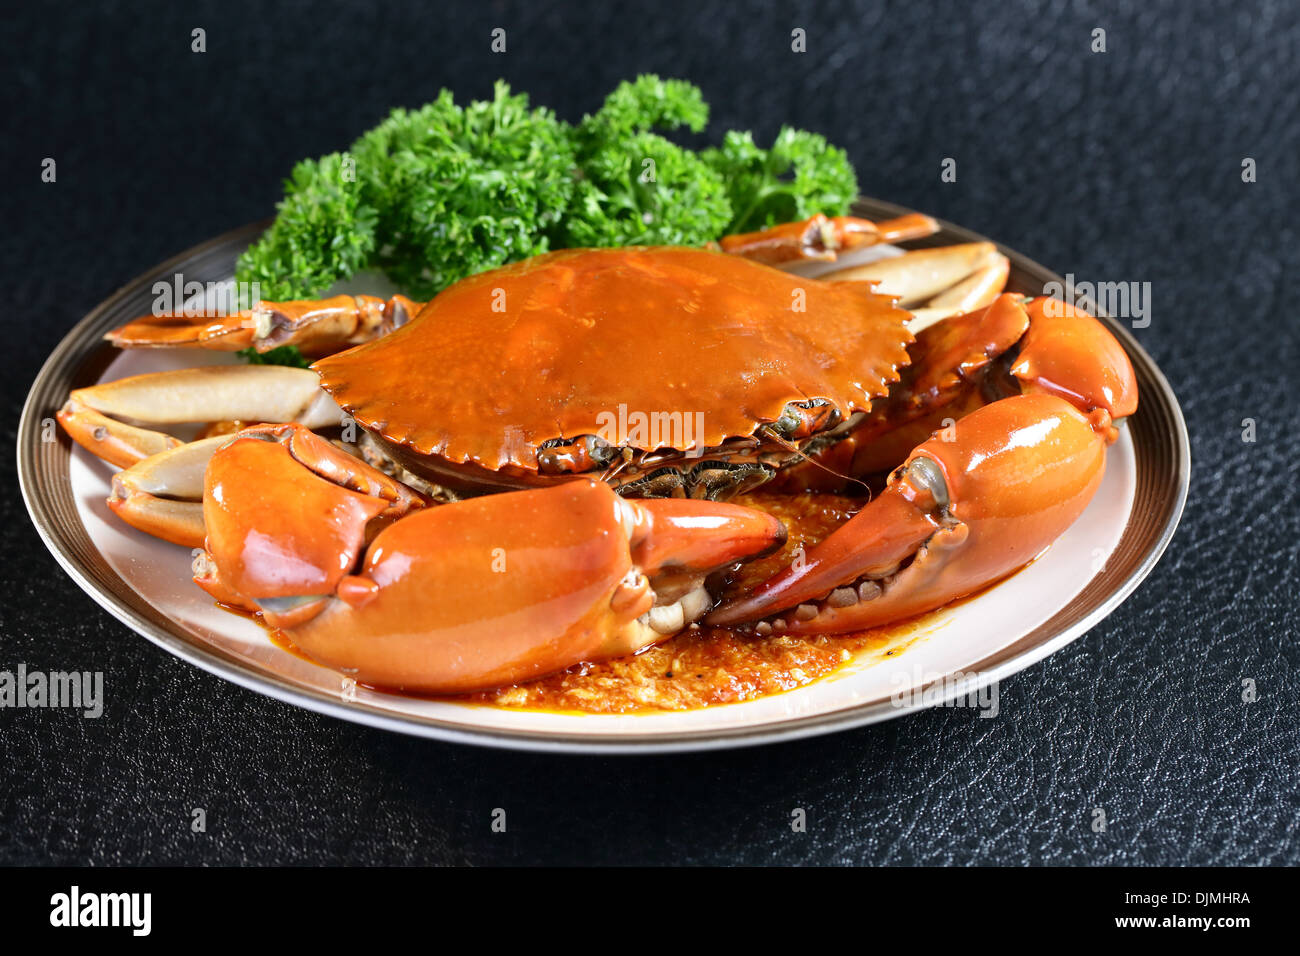 Chilis crab